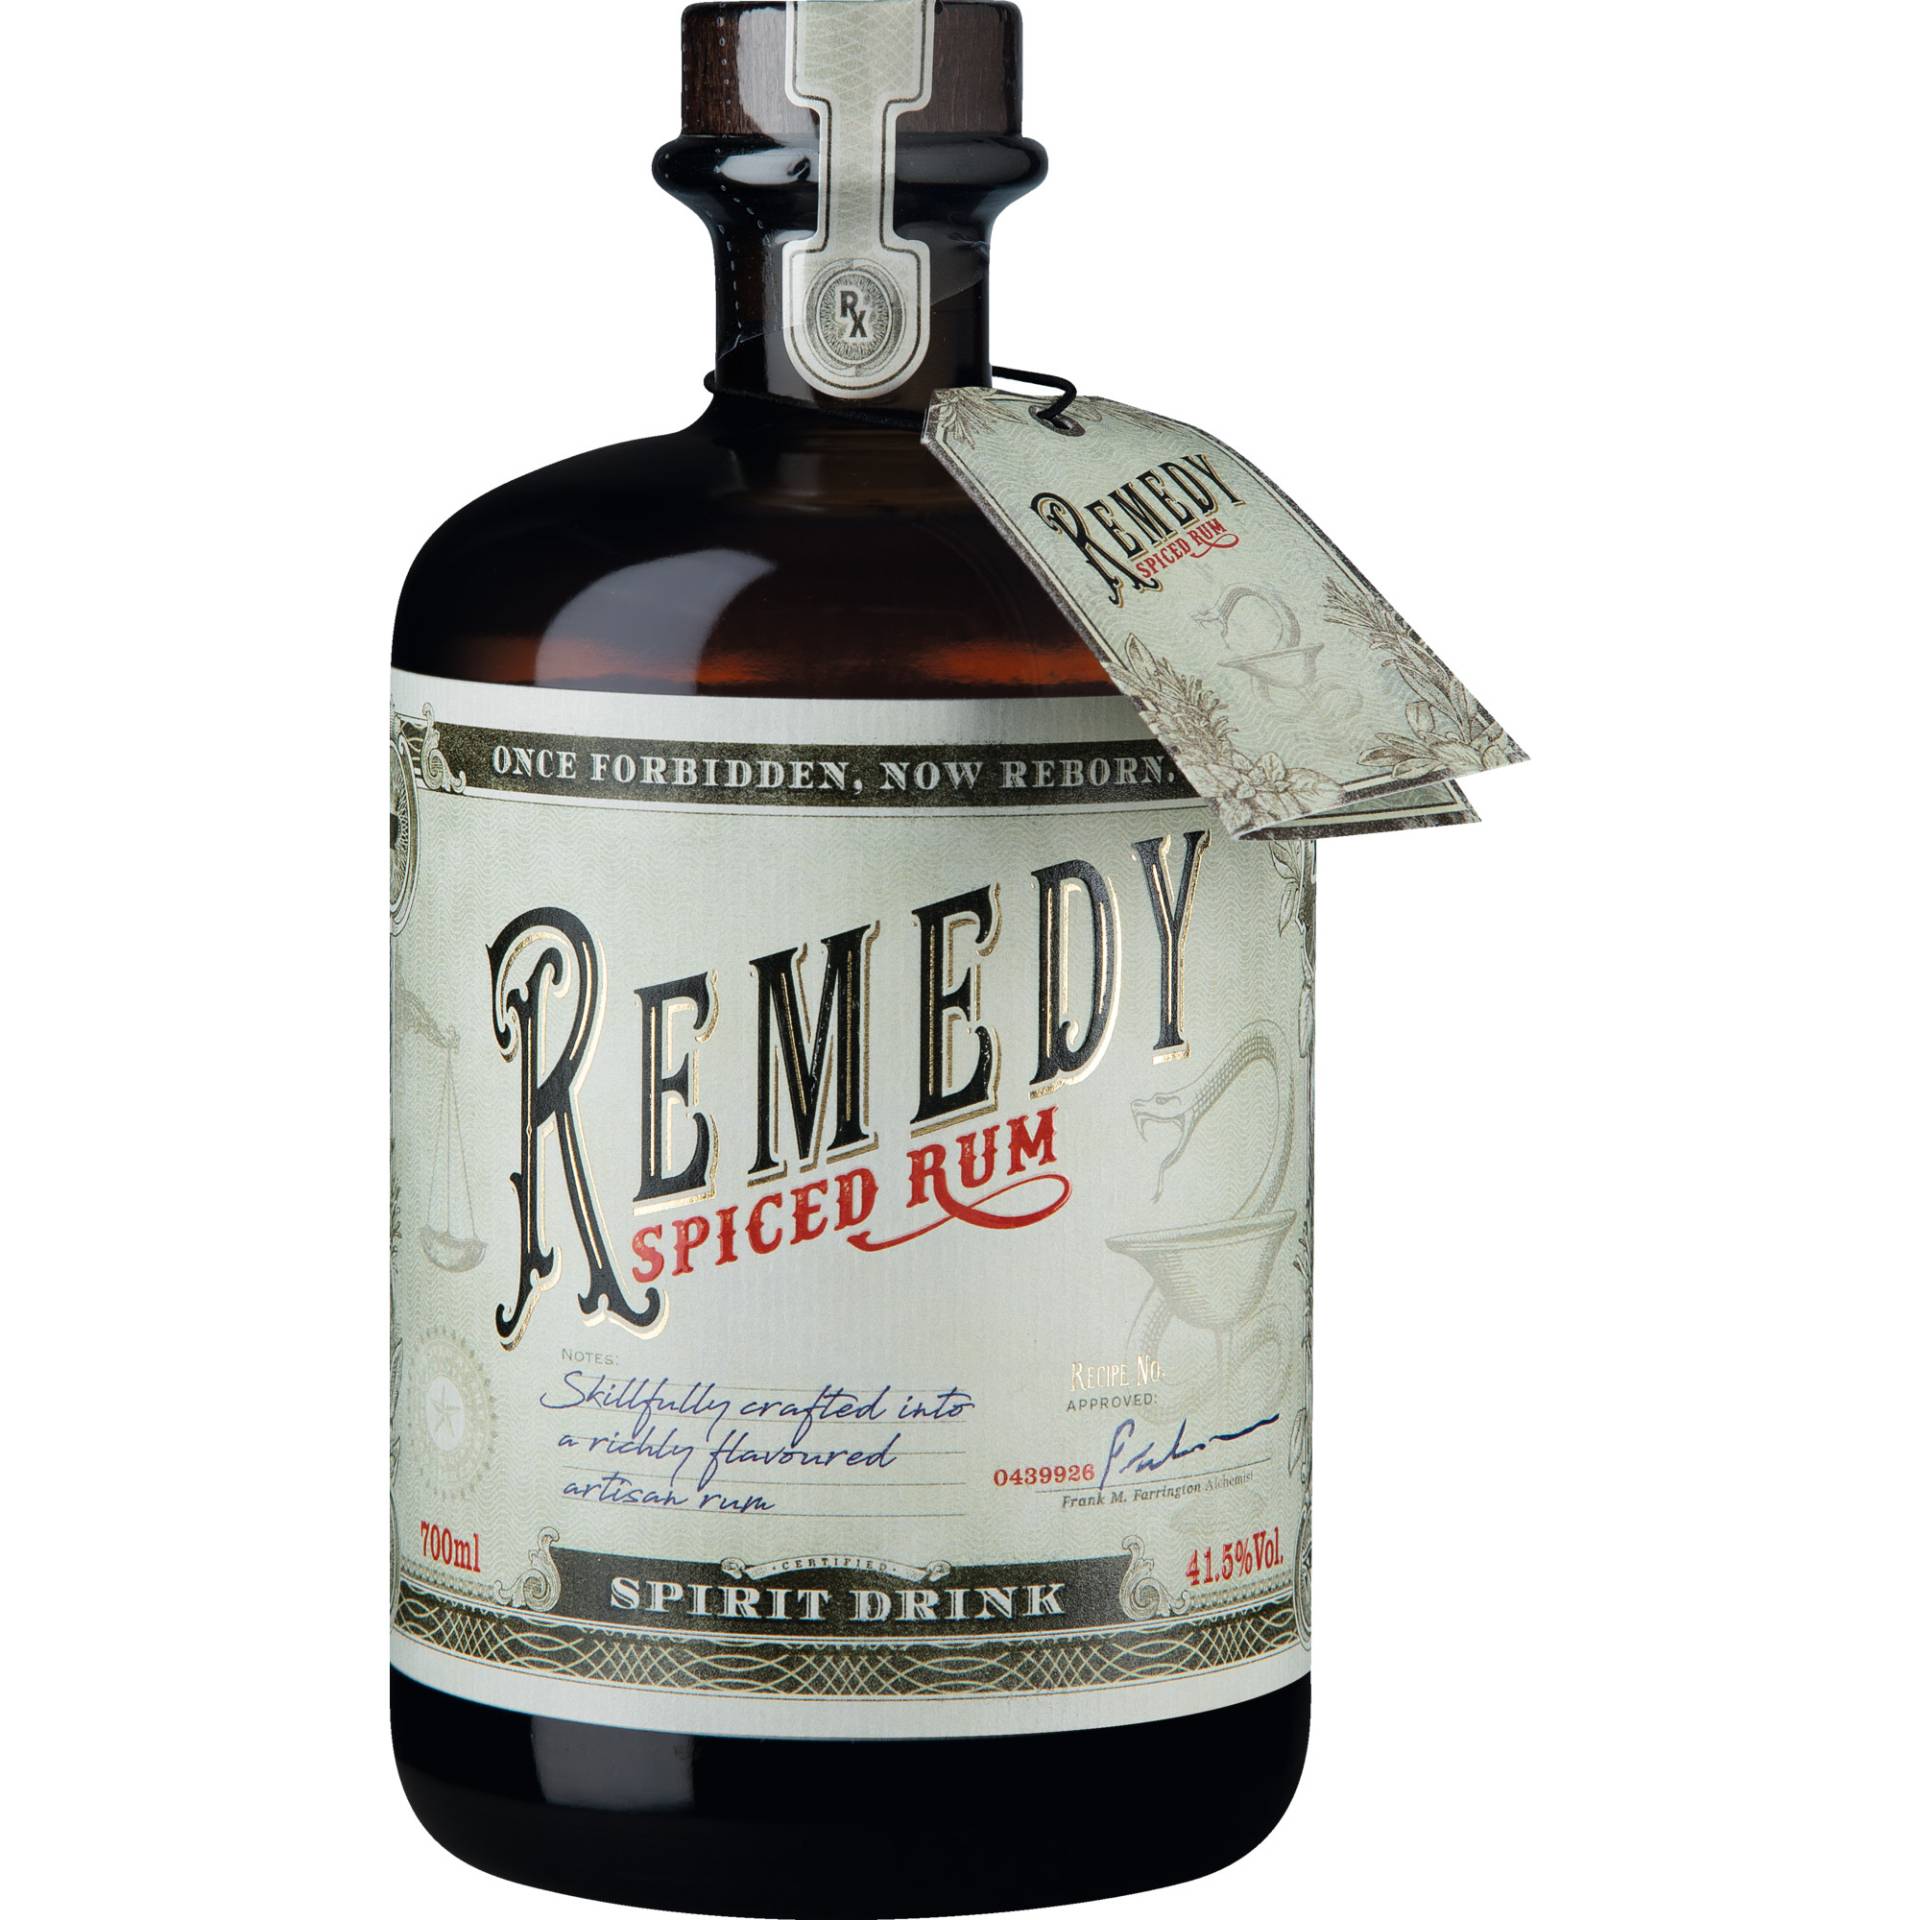 Remedy Spiced Rum, 0,7 L, 41,50 % Vol., Spirituosen von Sierra Madre GmbH, Rohrstr. 26, 58093 Hagen, Deutschland